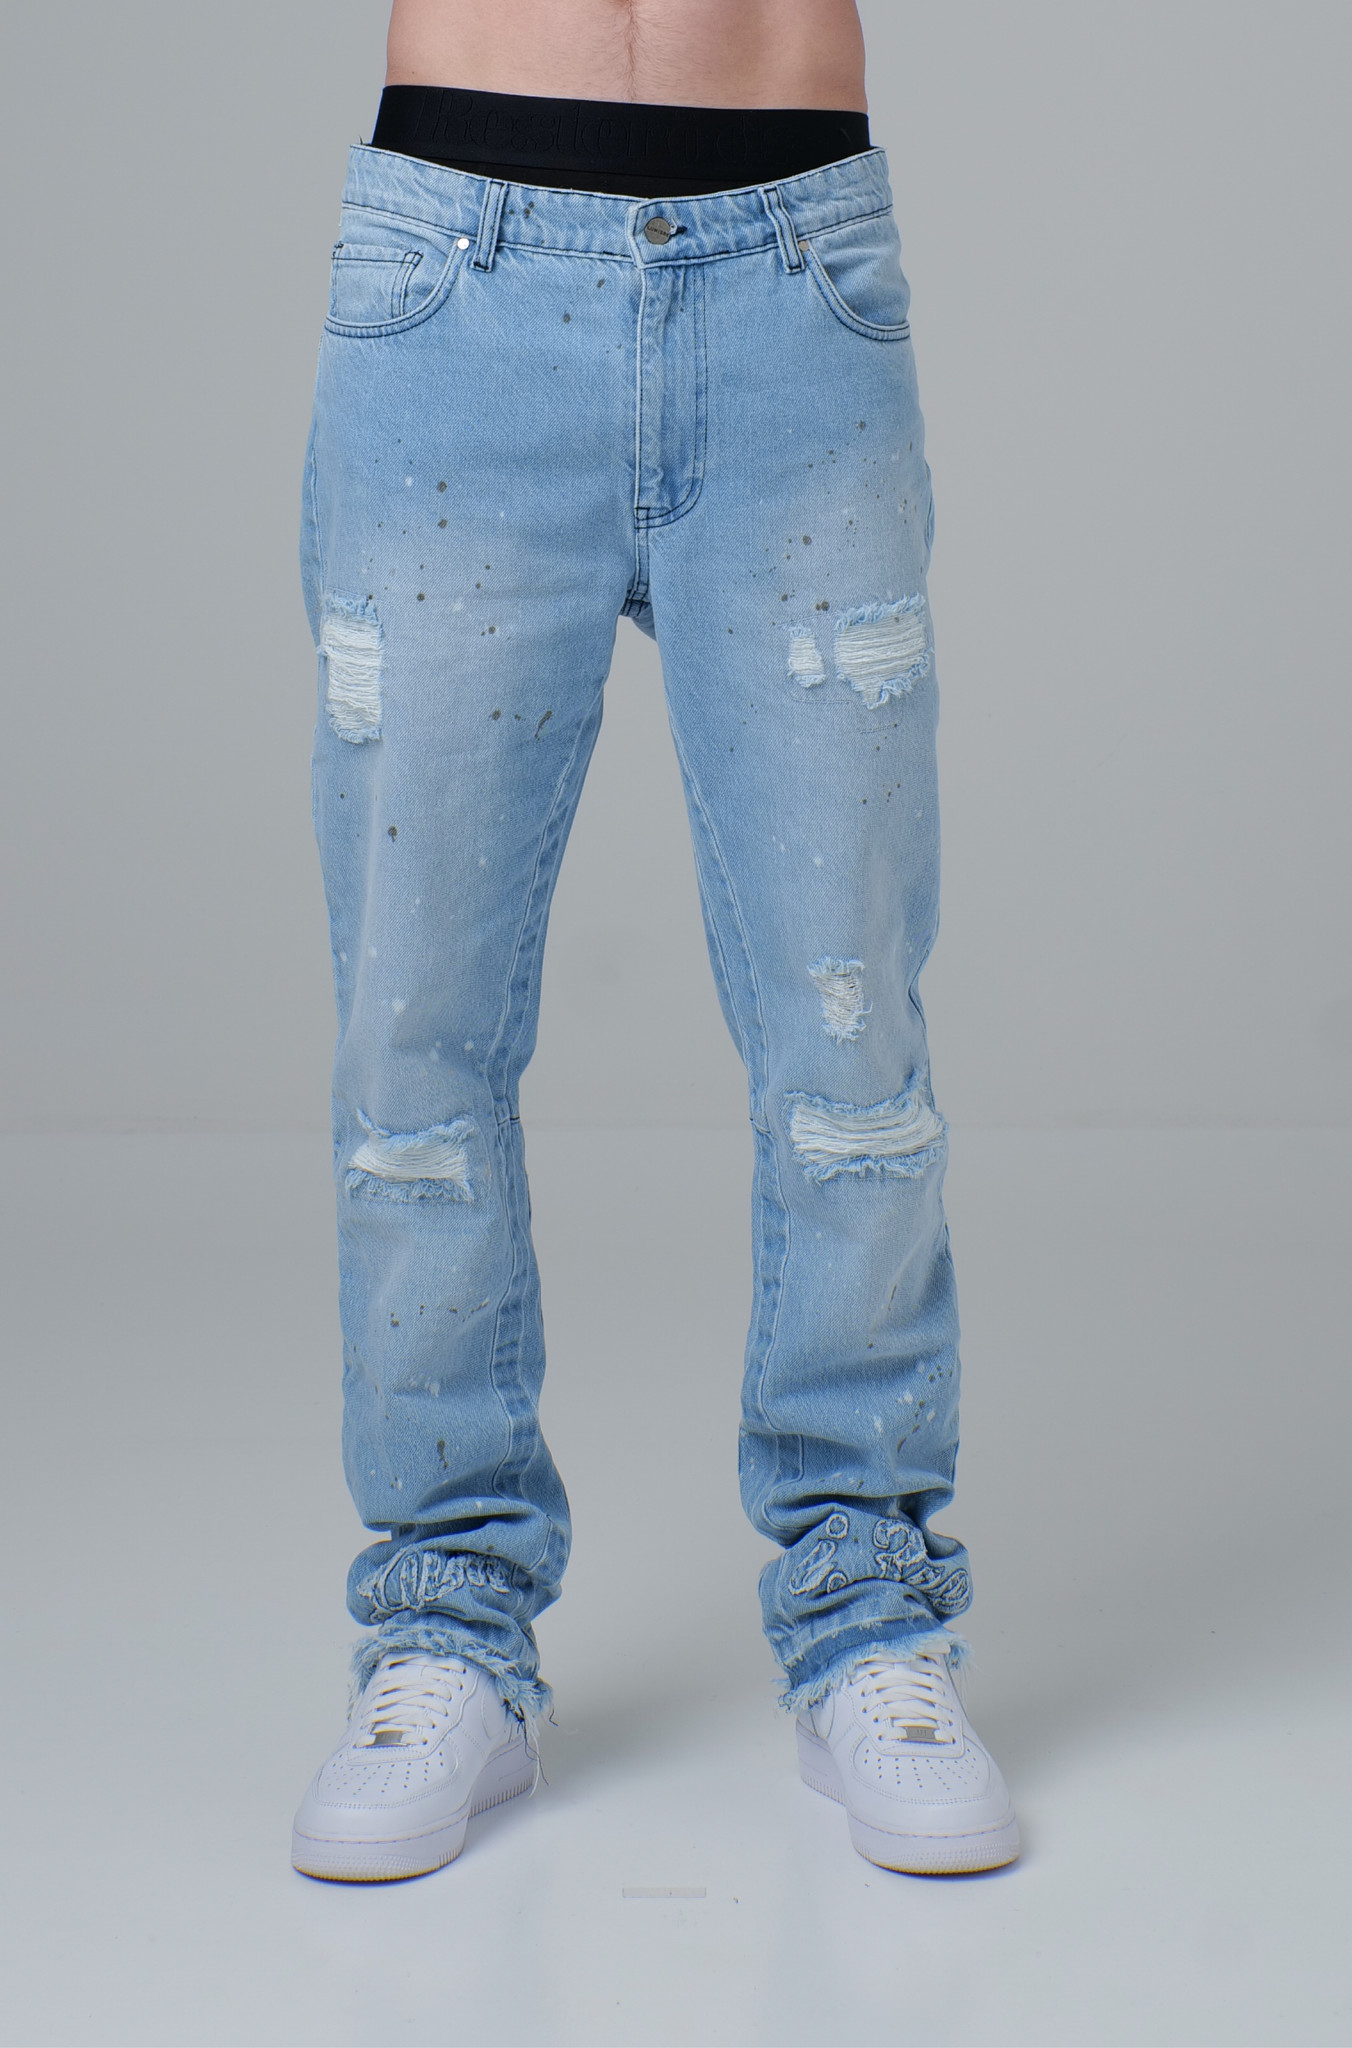 Monogram Denim Jeans - LUMI3RE